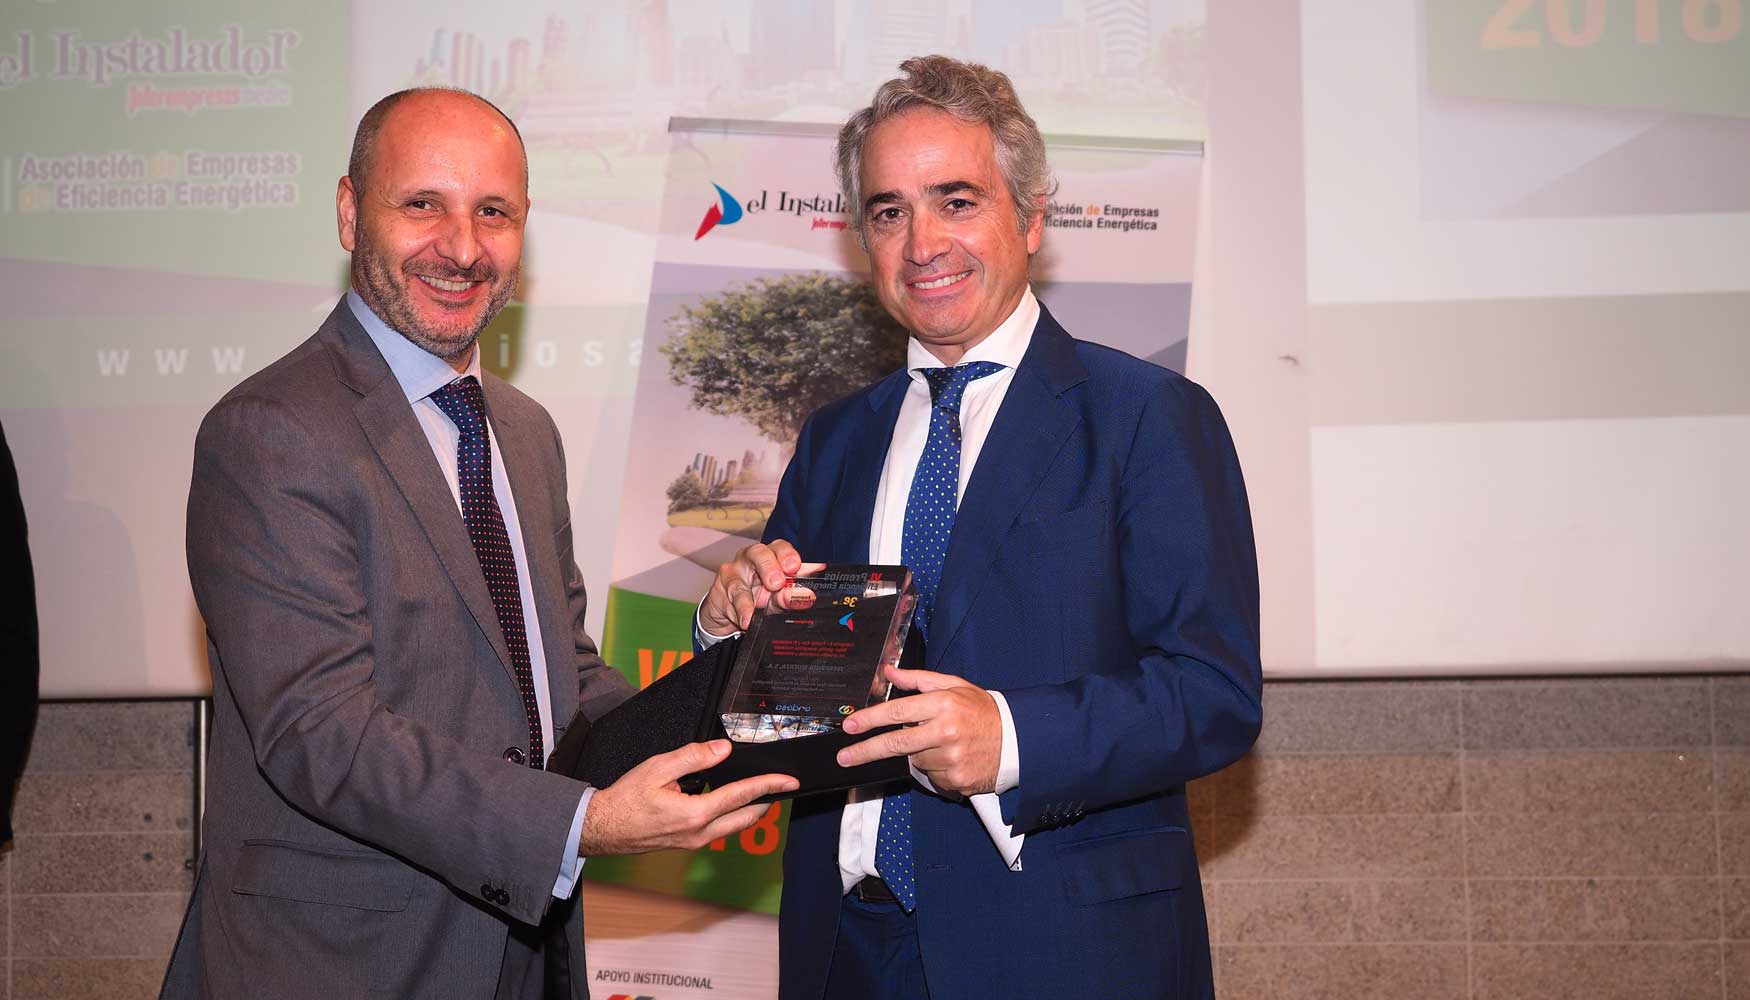 Ricardo Muoz (izquierda), director tcnico de enel x Iberia de Endesa, entrega el premio a Rafael Prez Ruiz, director general de Iberfruta Muerza...